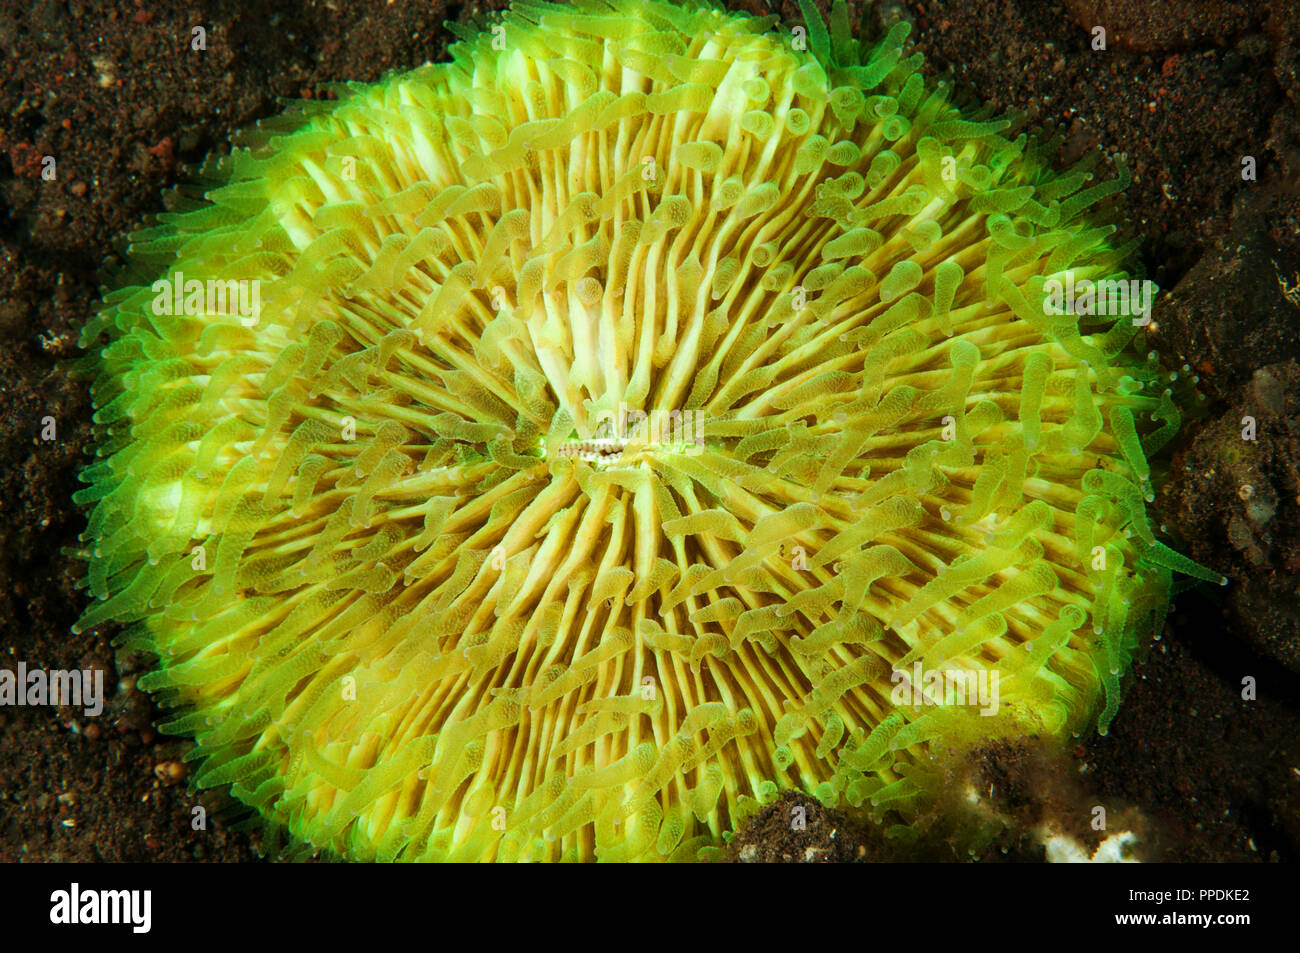 Fluorescent mushroom coral, Fungia sp., Bali Indonesia. Stock Photo